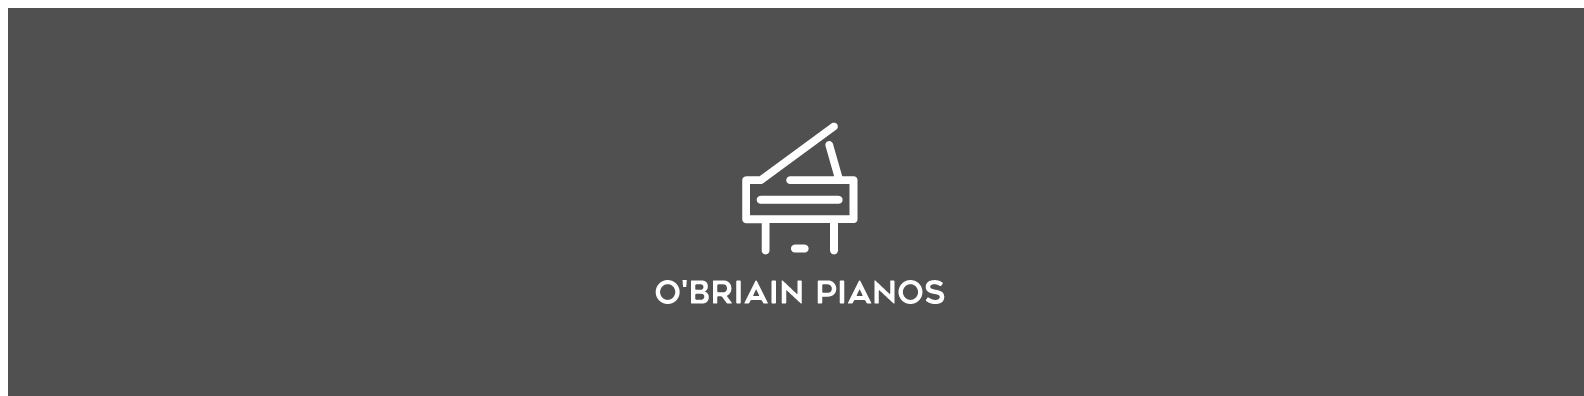 John Broadwood-O'Briain Pianos